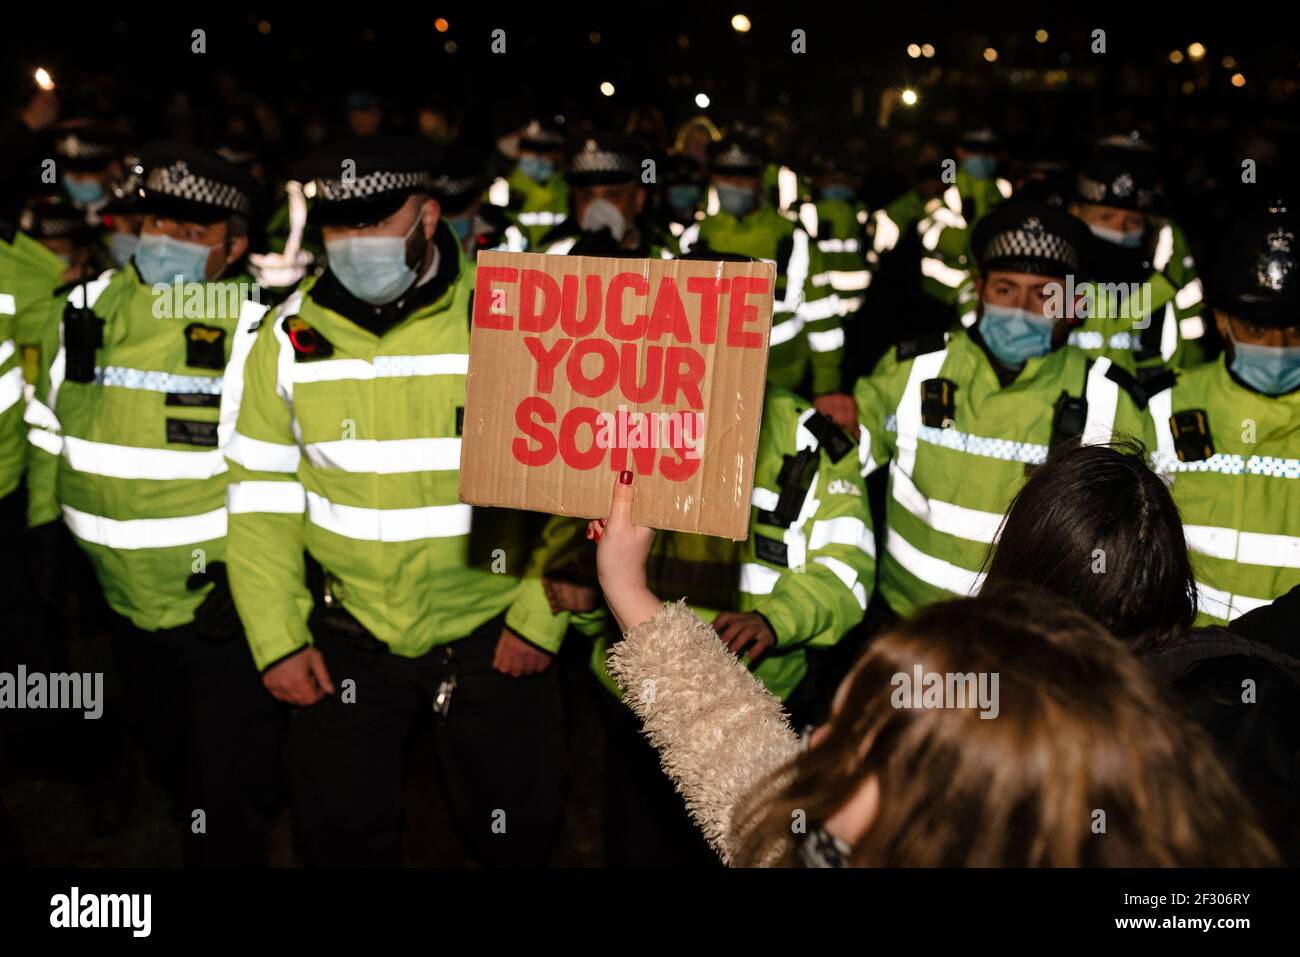 Londres, Royaume-Uni - 13 mars 2021 : veillée pour pleurer Sarah Everard tuant et protestant contre la violence sexuelle. Éduquez vos fils. Banque D'Images